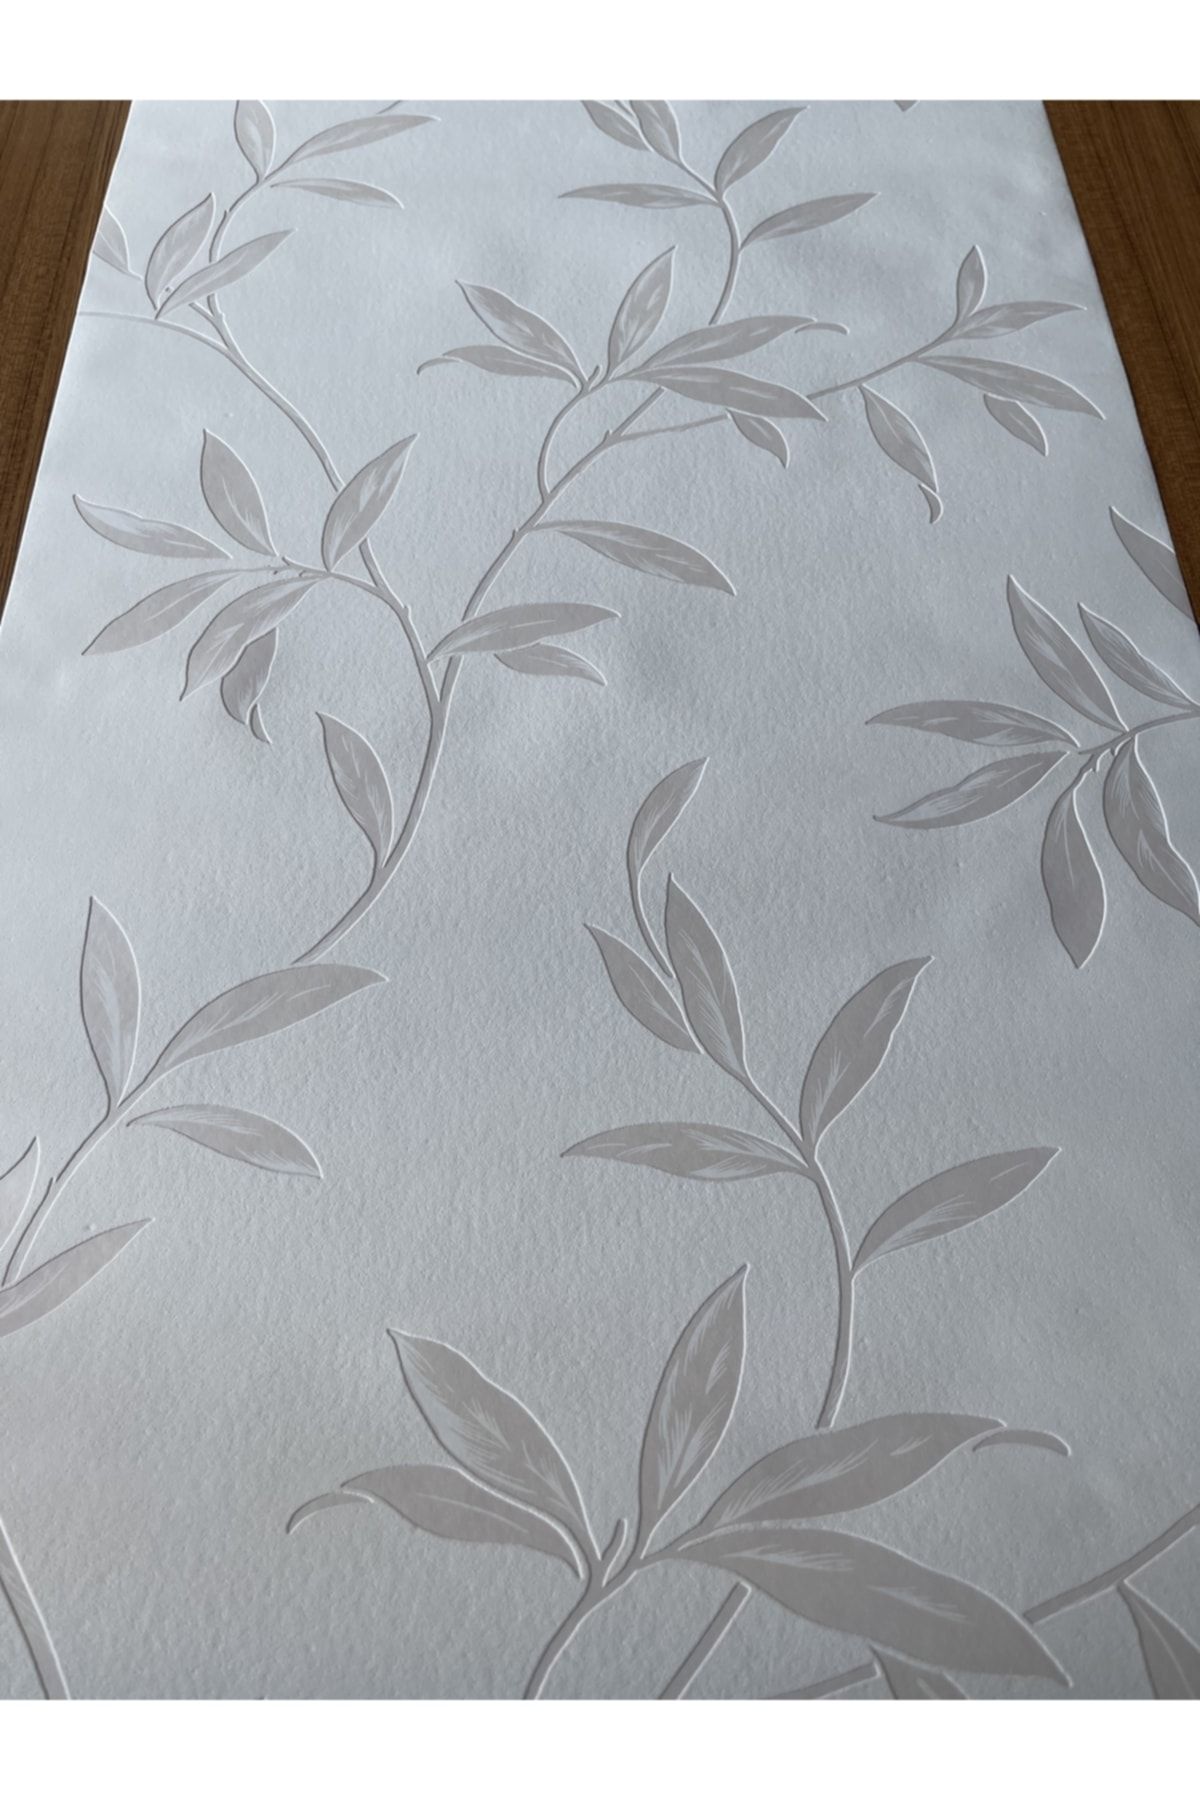 BAŞYAPI DİZAYN Kırık Beyaz Üzeri Krem Yaprak Desenli Ithal Vinly Duvar Kağıdı (5m²)